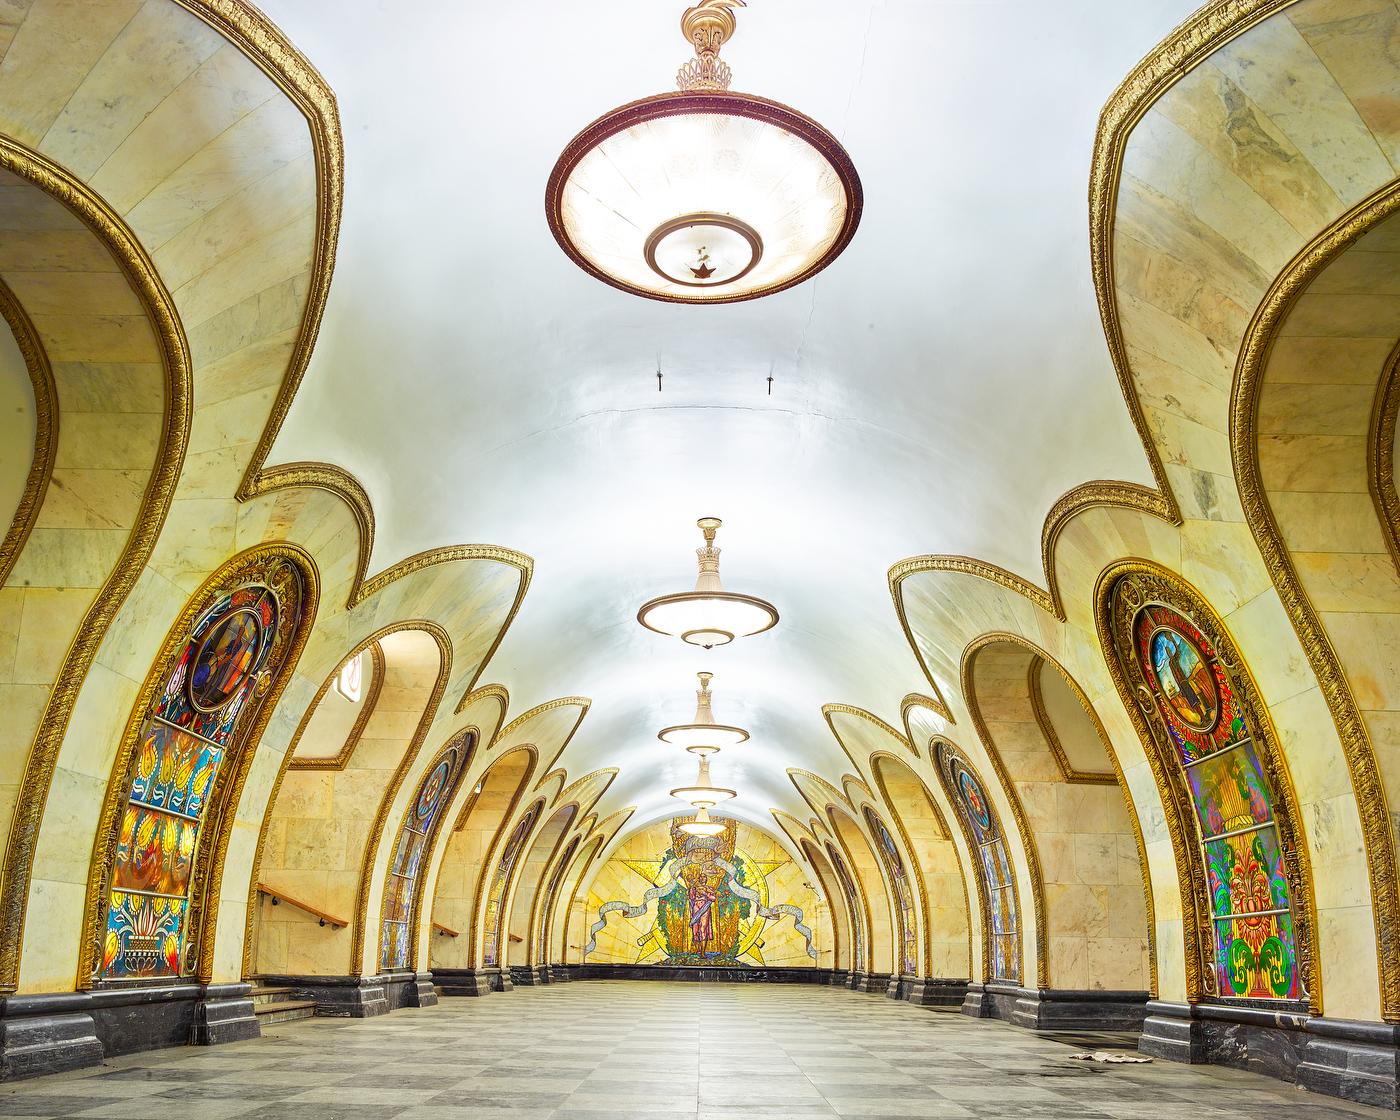 Alle verfügbaren Größen und Auflagen für jede Größe dieses Fotos:
21" x 26" Auflage von 7
32" x 40" Auflage von 7
44" x 55" Auflage von 10
59" x 73,5" Auflage von 5

Burdenys Russlandbilder, insbesondere seine Fotografien der Moskauer Metro, in